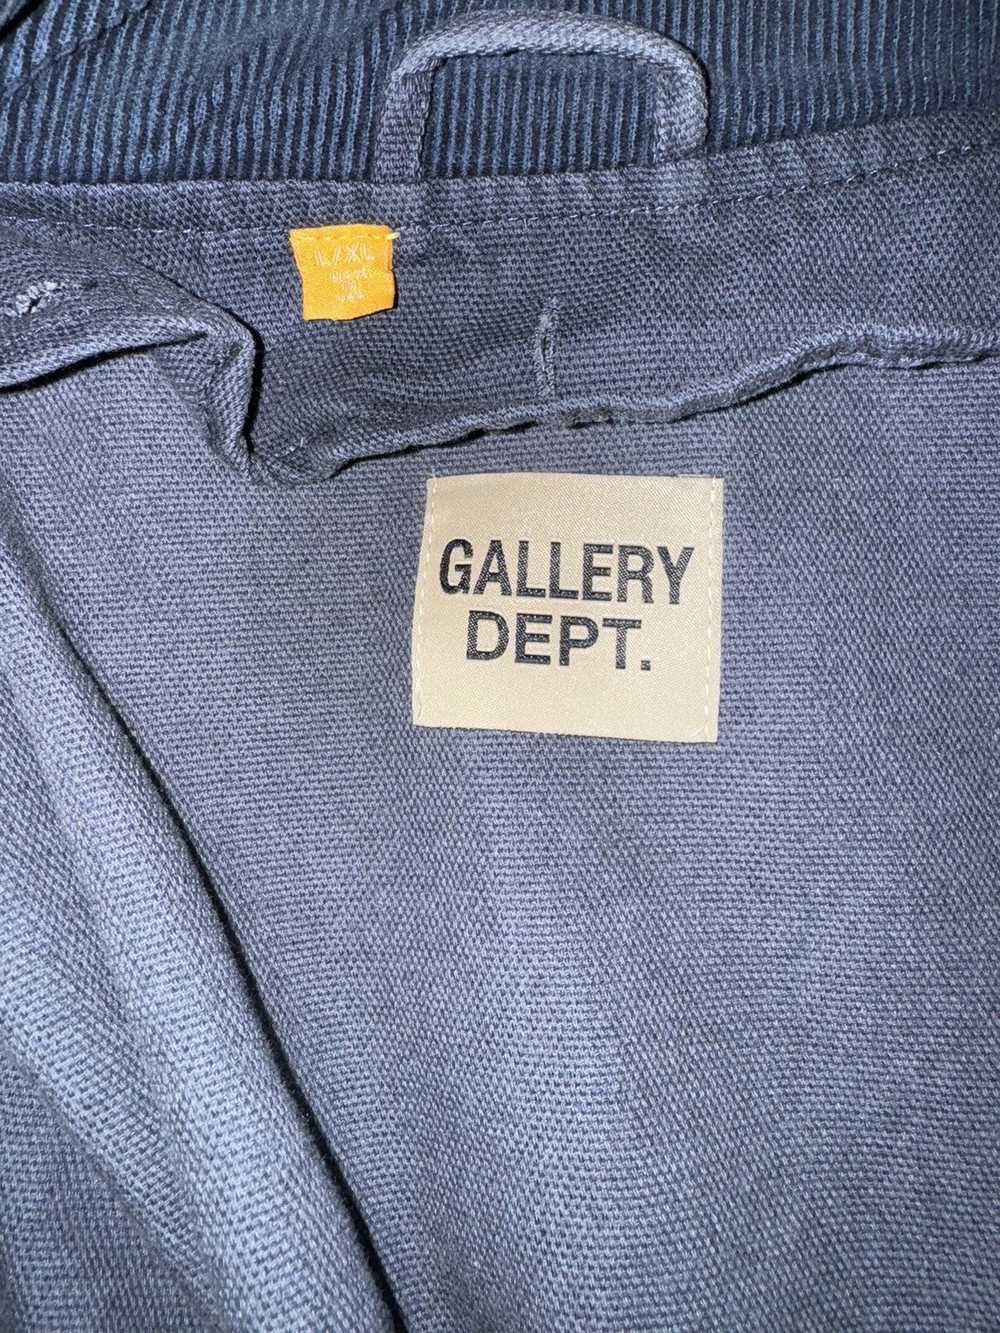 Gallery Dept. Gallery Dept Jacket - image 3